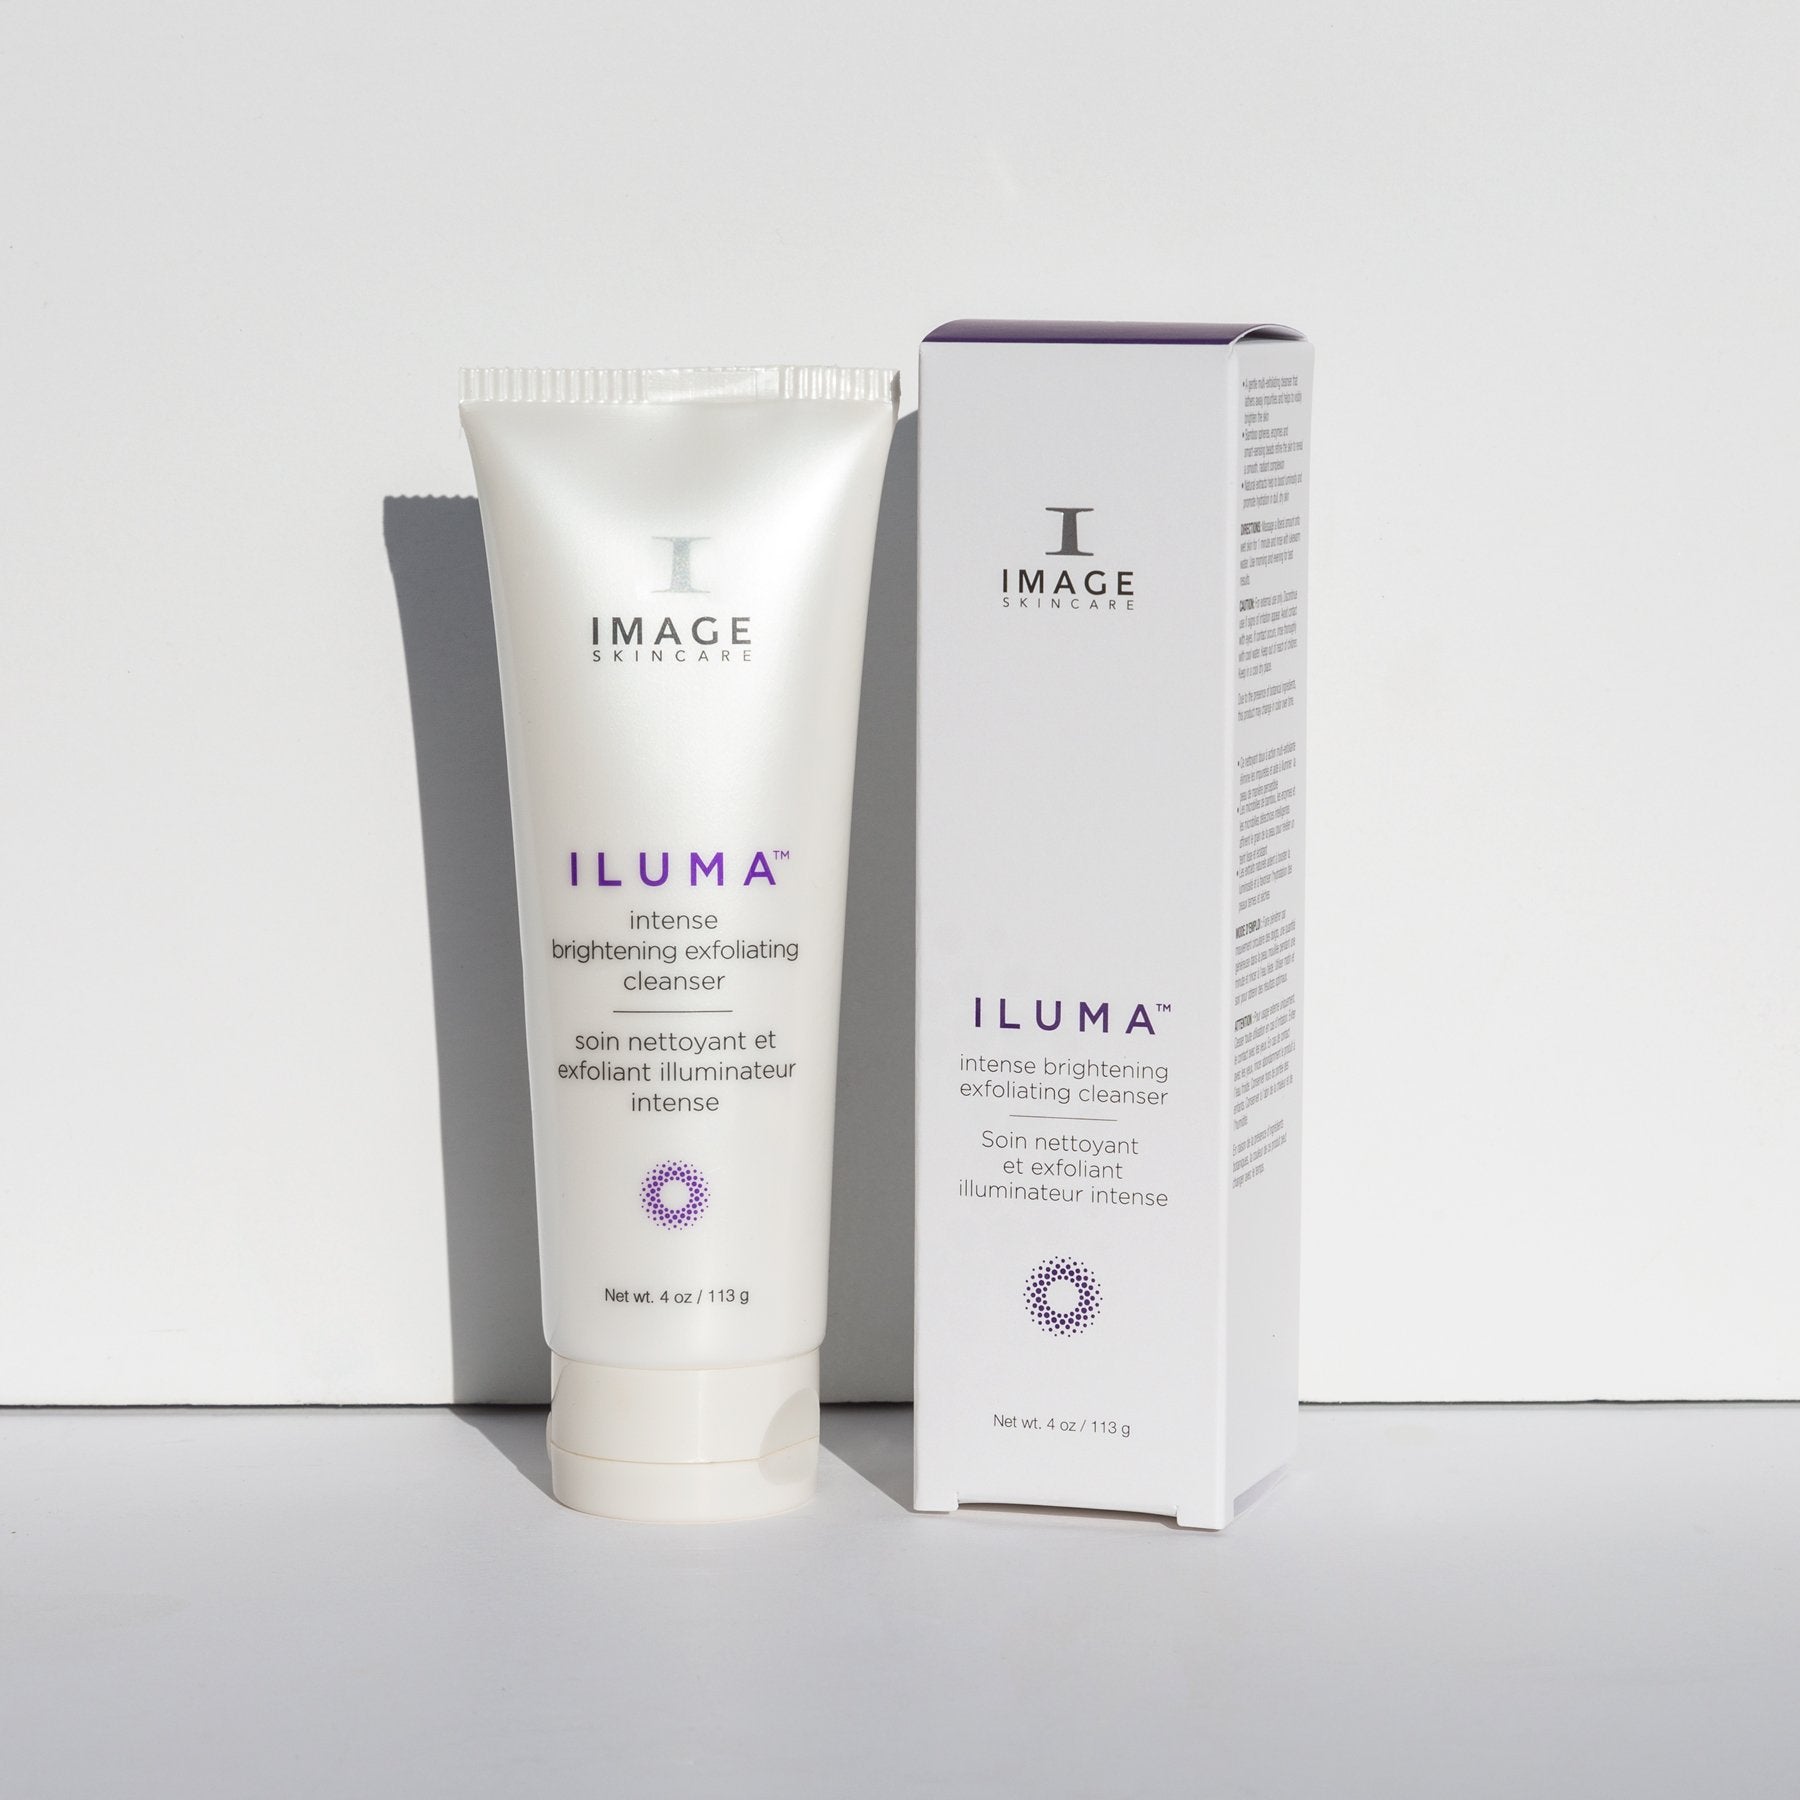 ILUMA intense brightening exfoliating cleanser | IMAGE Skincare